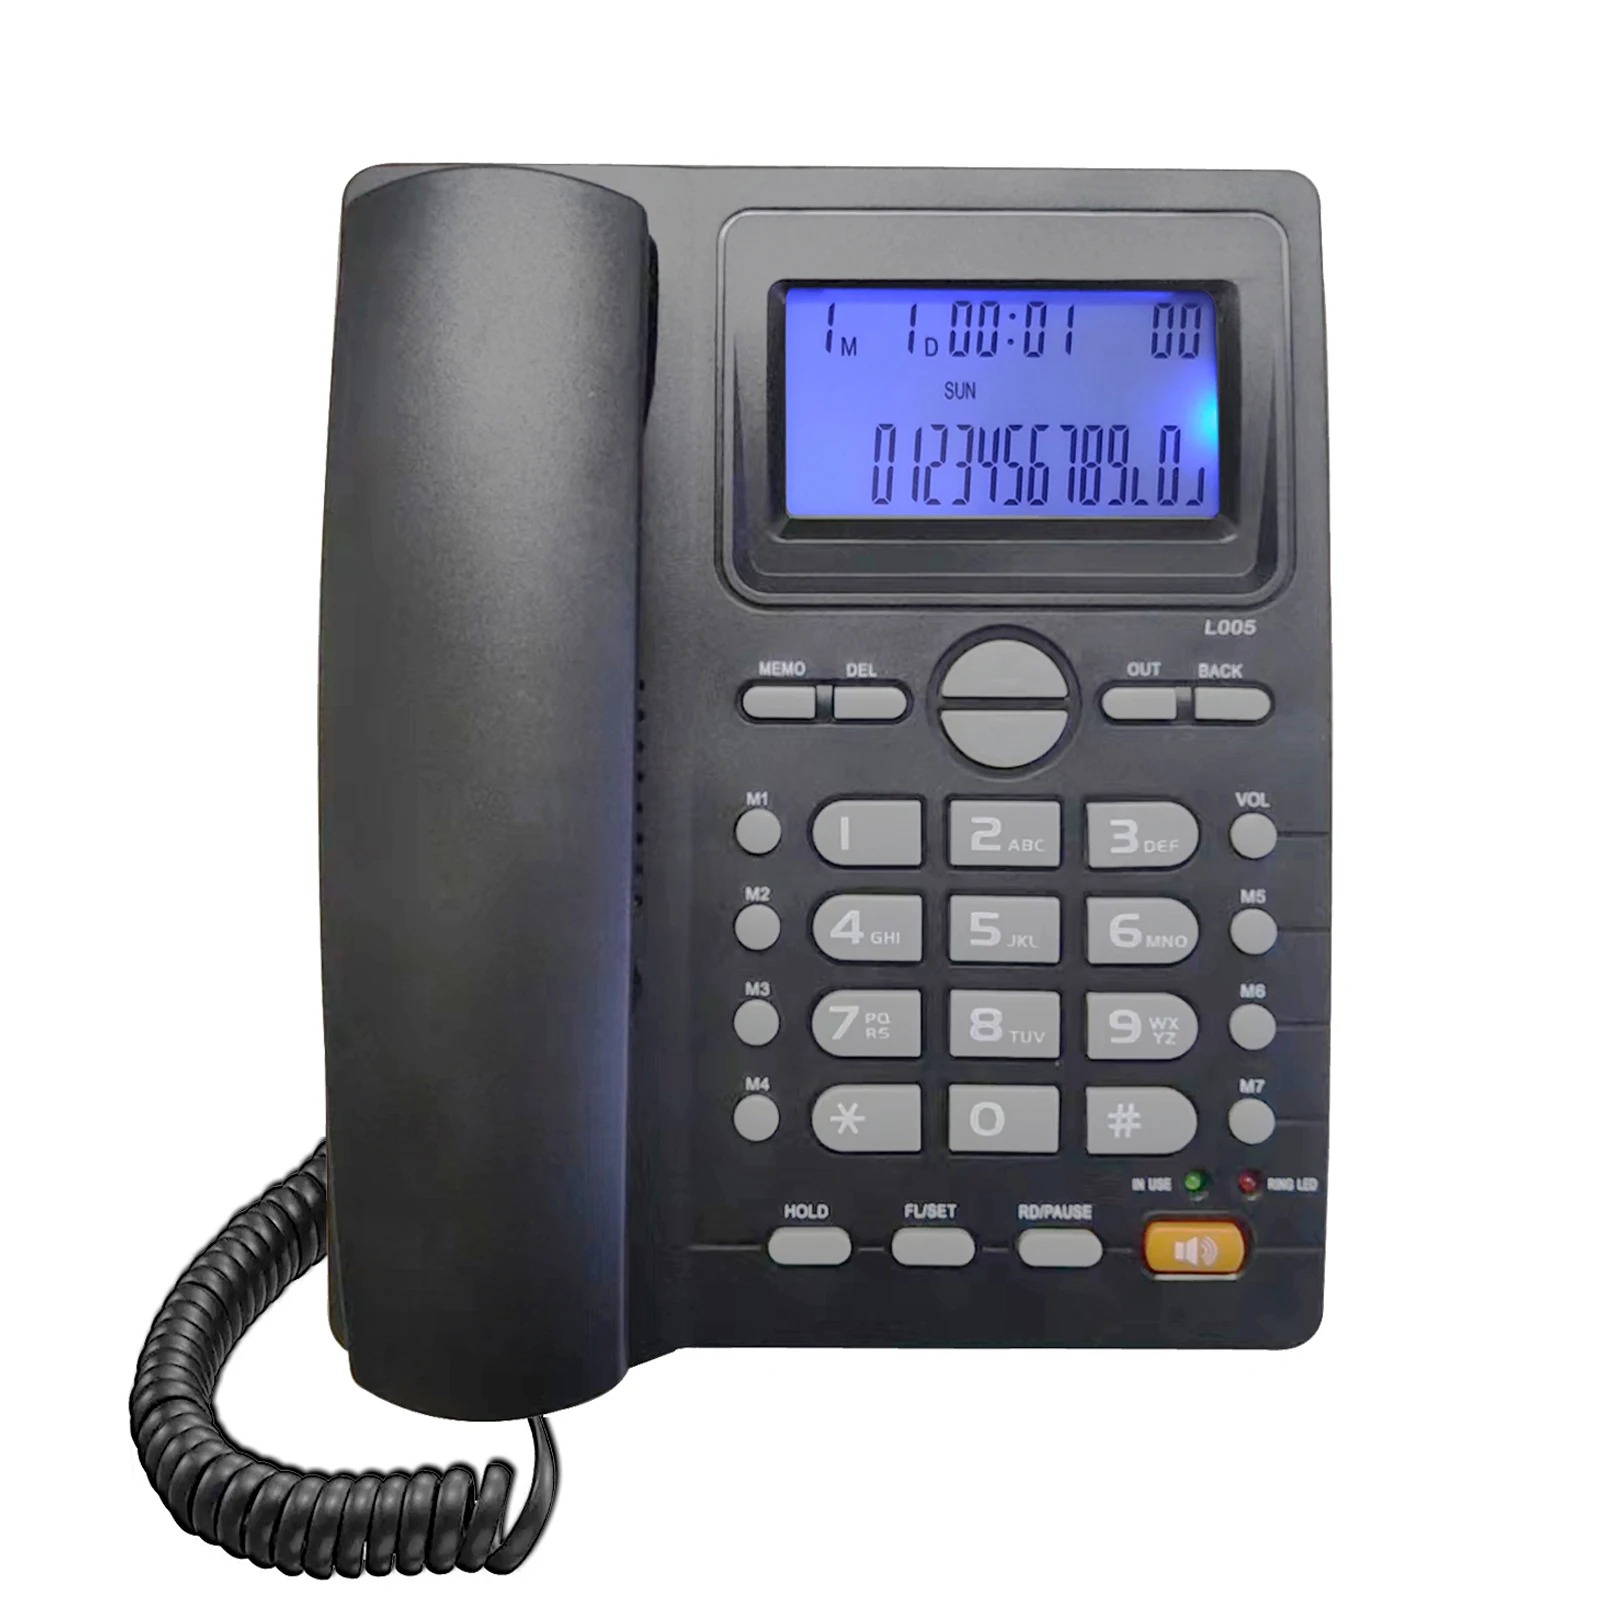 

Проводной телефон, телефон с определителем номера, основной стационарный телефон, телефон с определителем номера FSK/DTMF с ЖК-дисплеем входящего звонка